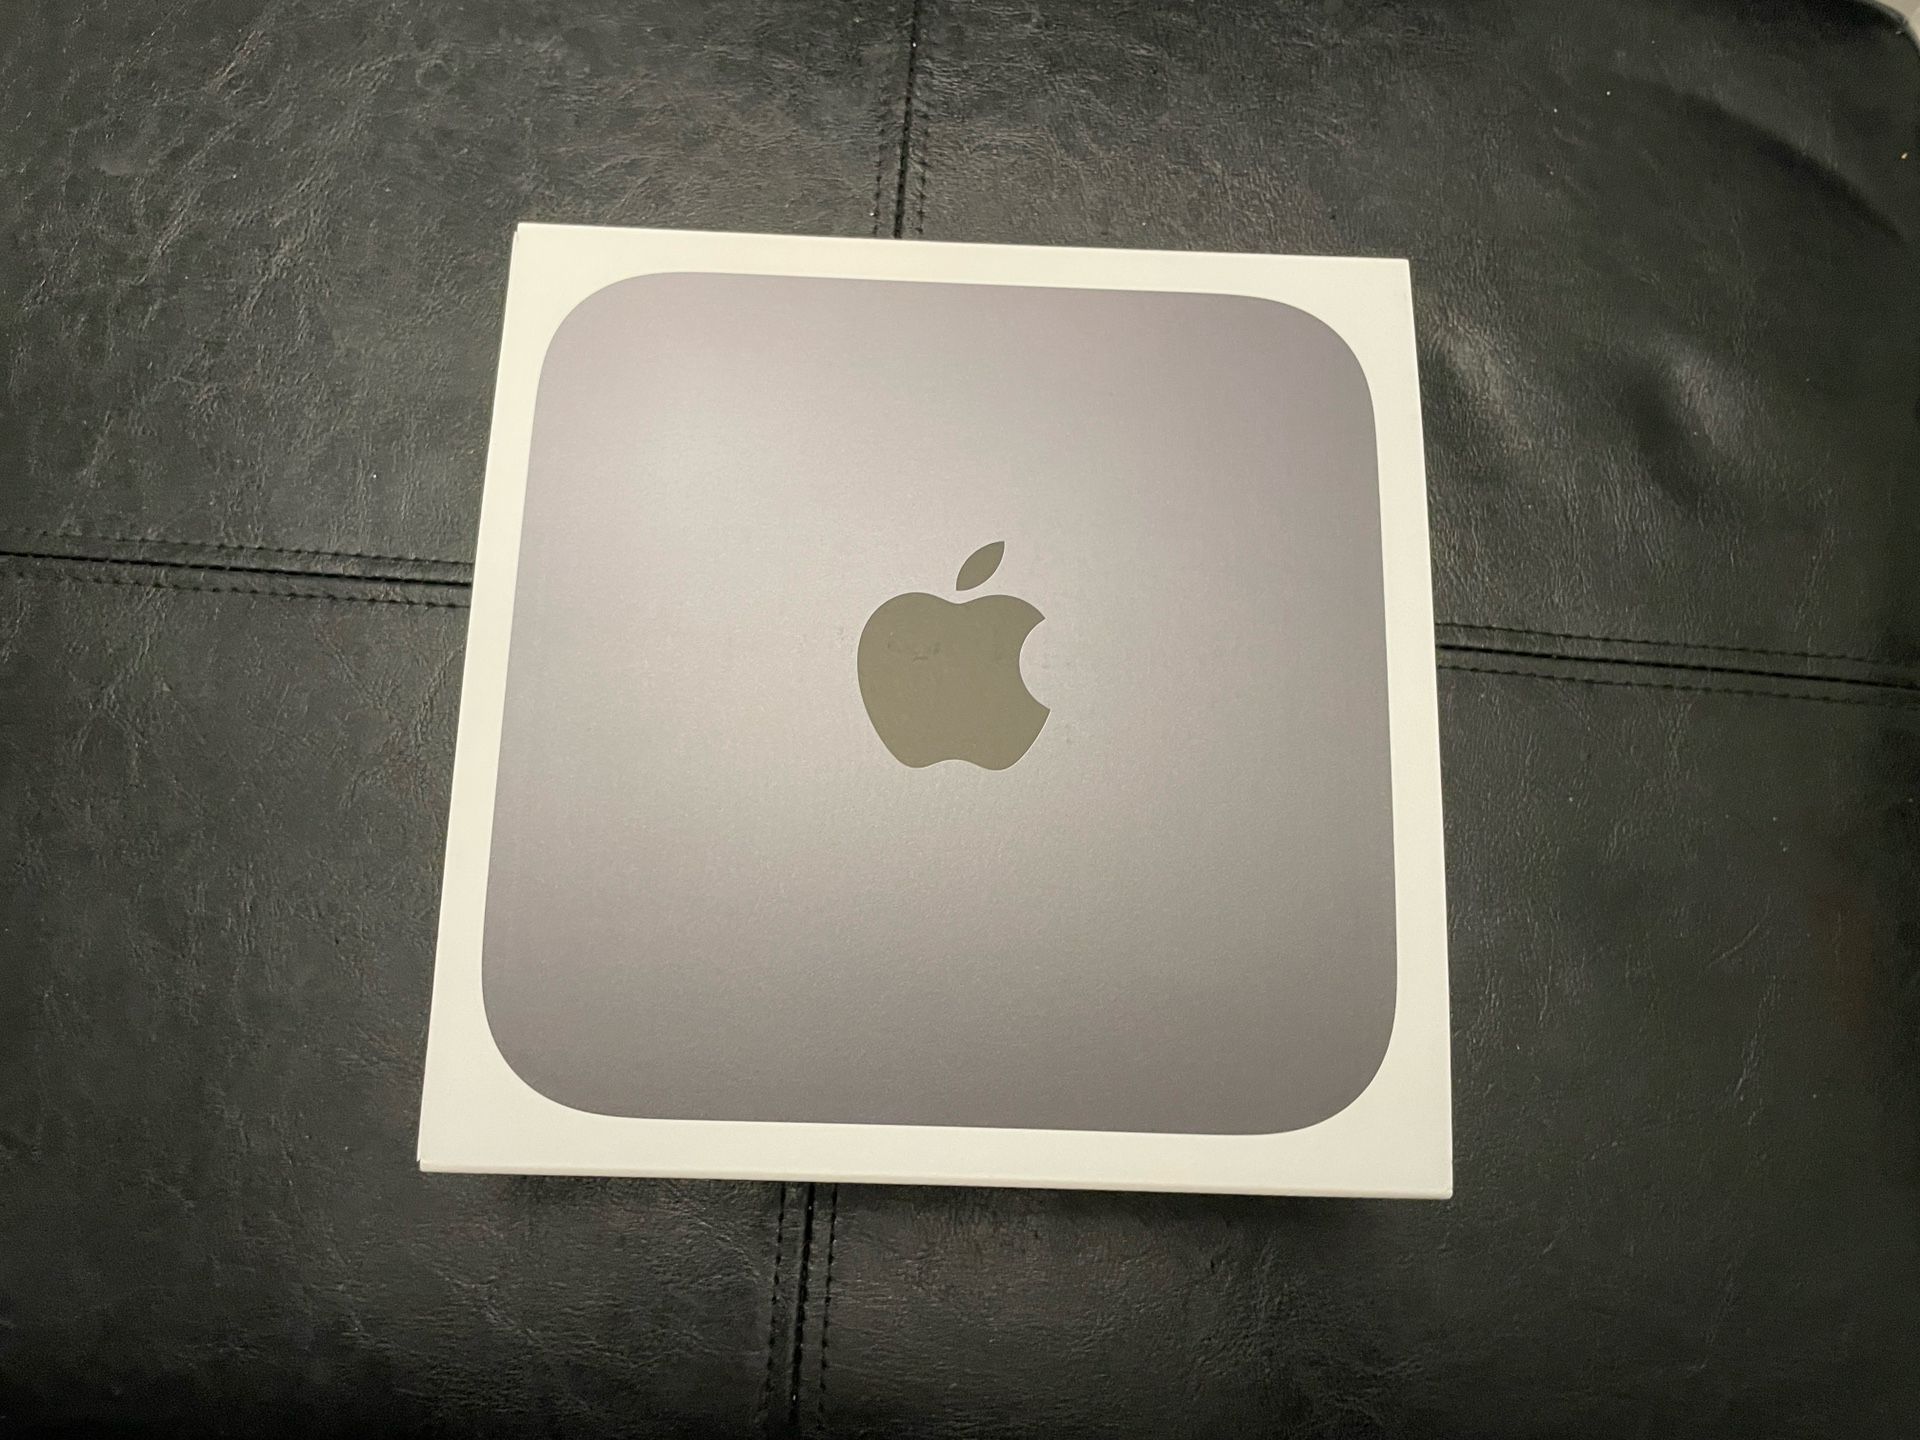 Mac Mini 2018 i7 32GB